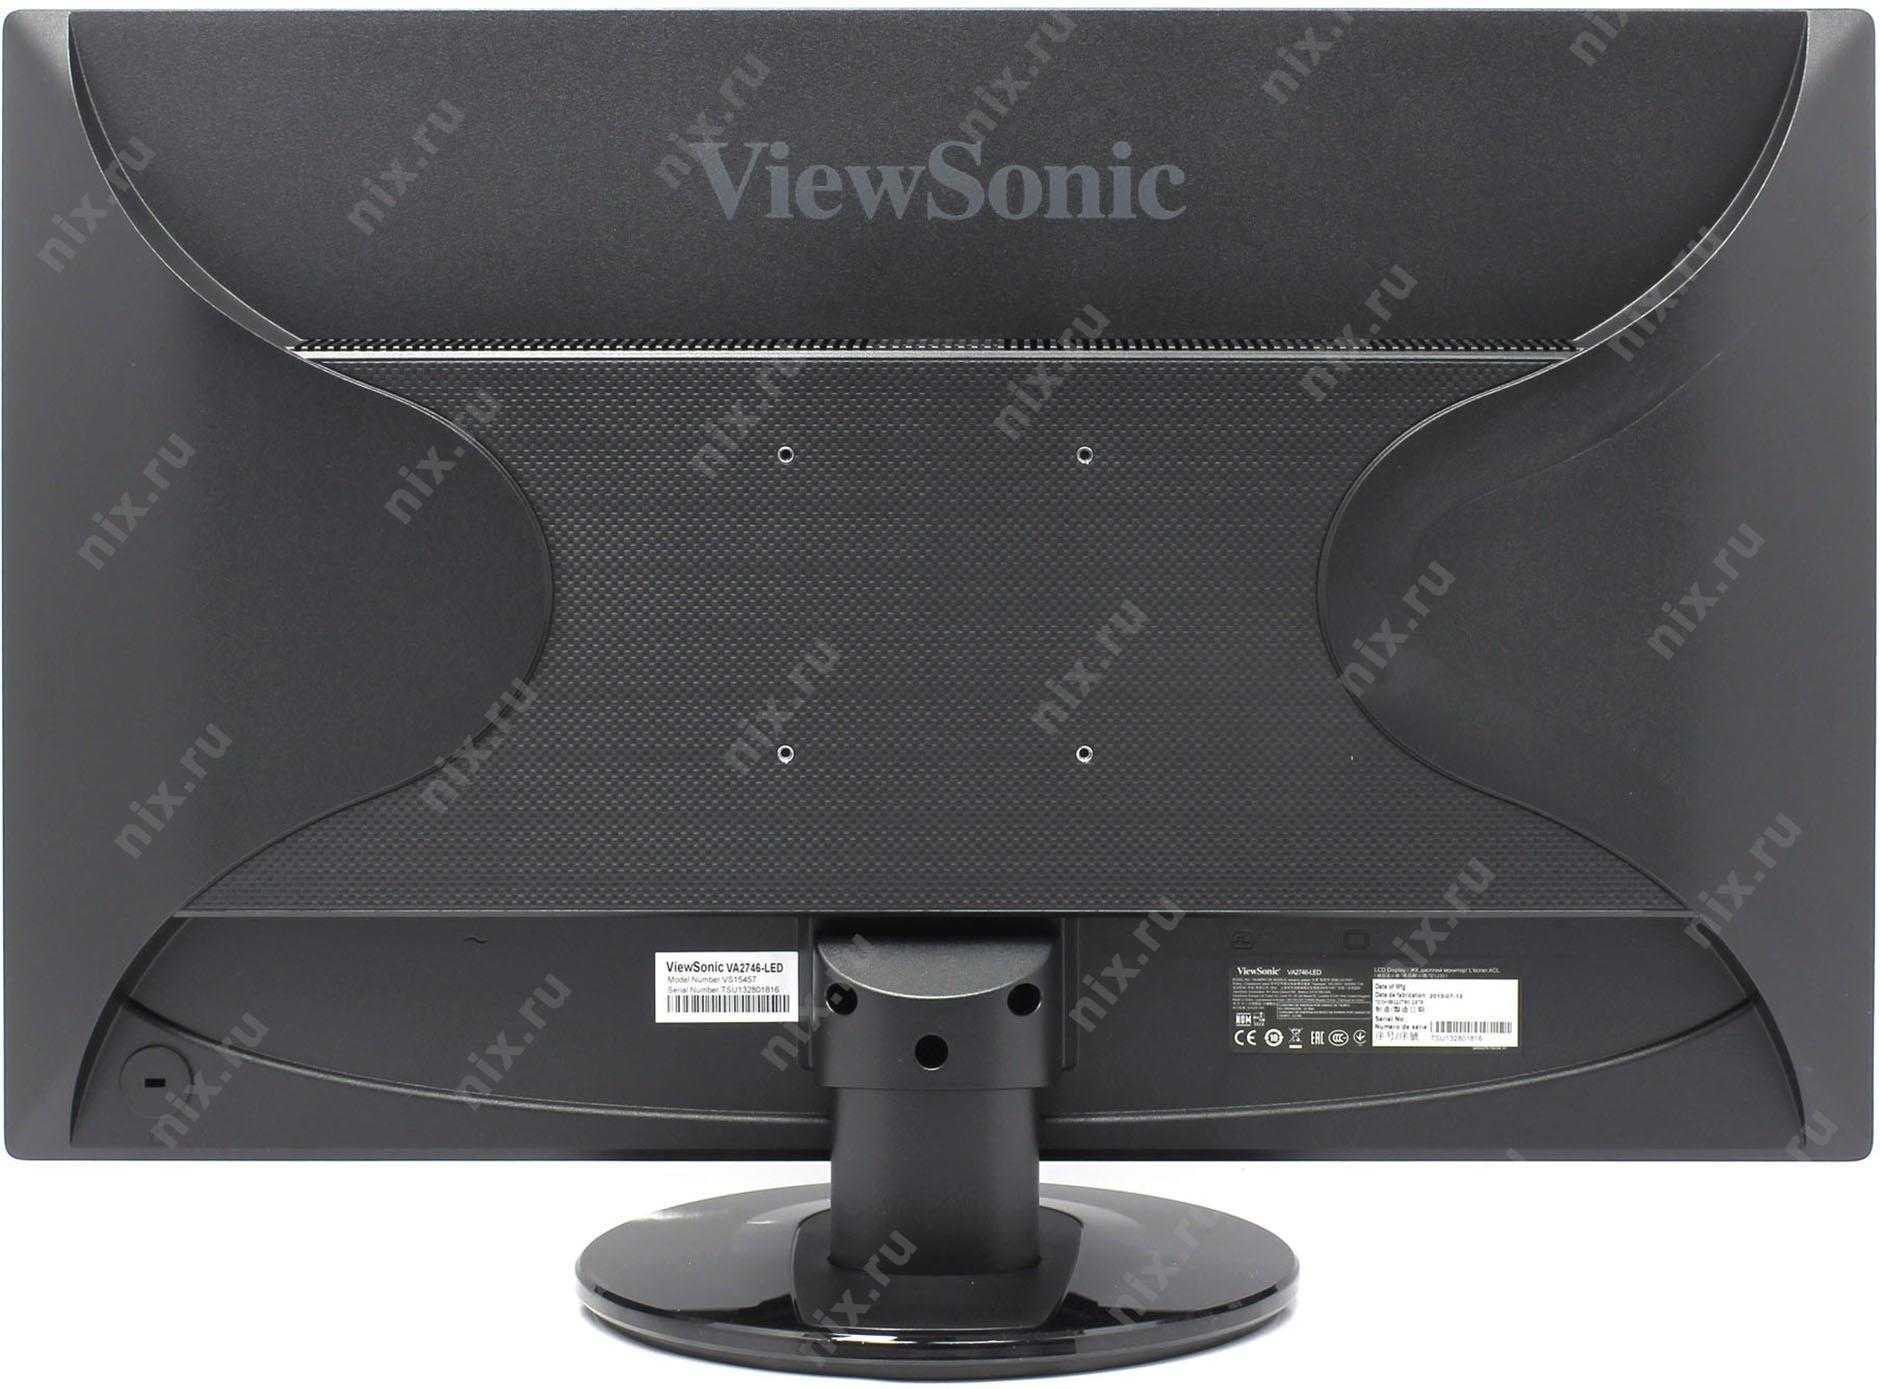 Жк монитор 27" viewsonic va2746-led — купить, цена и характеристики, отзывы